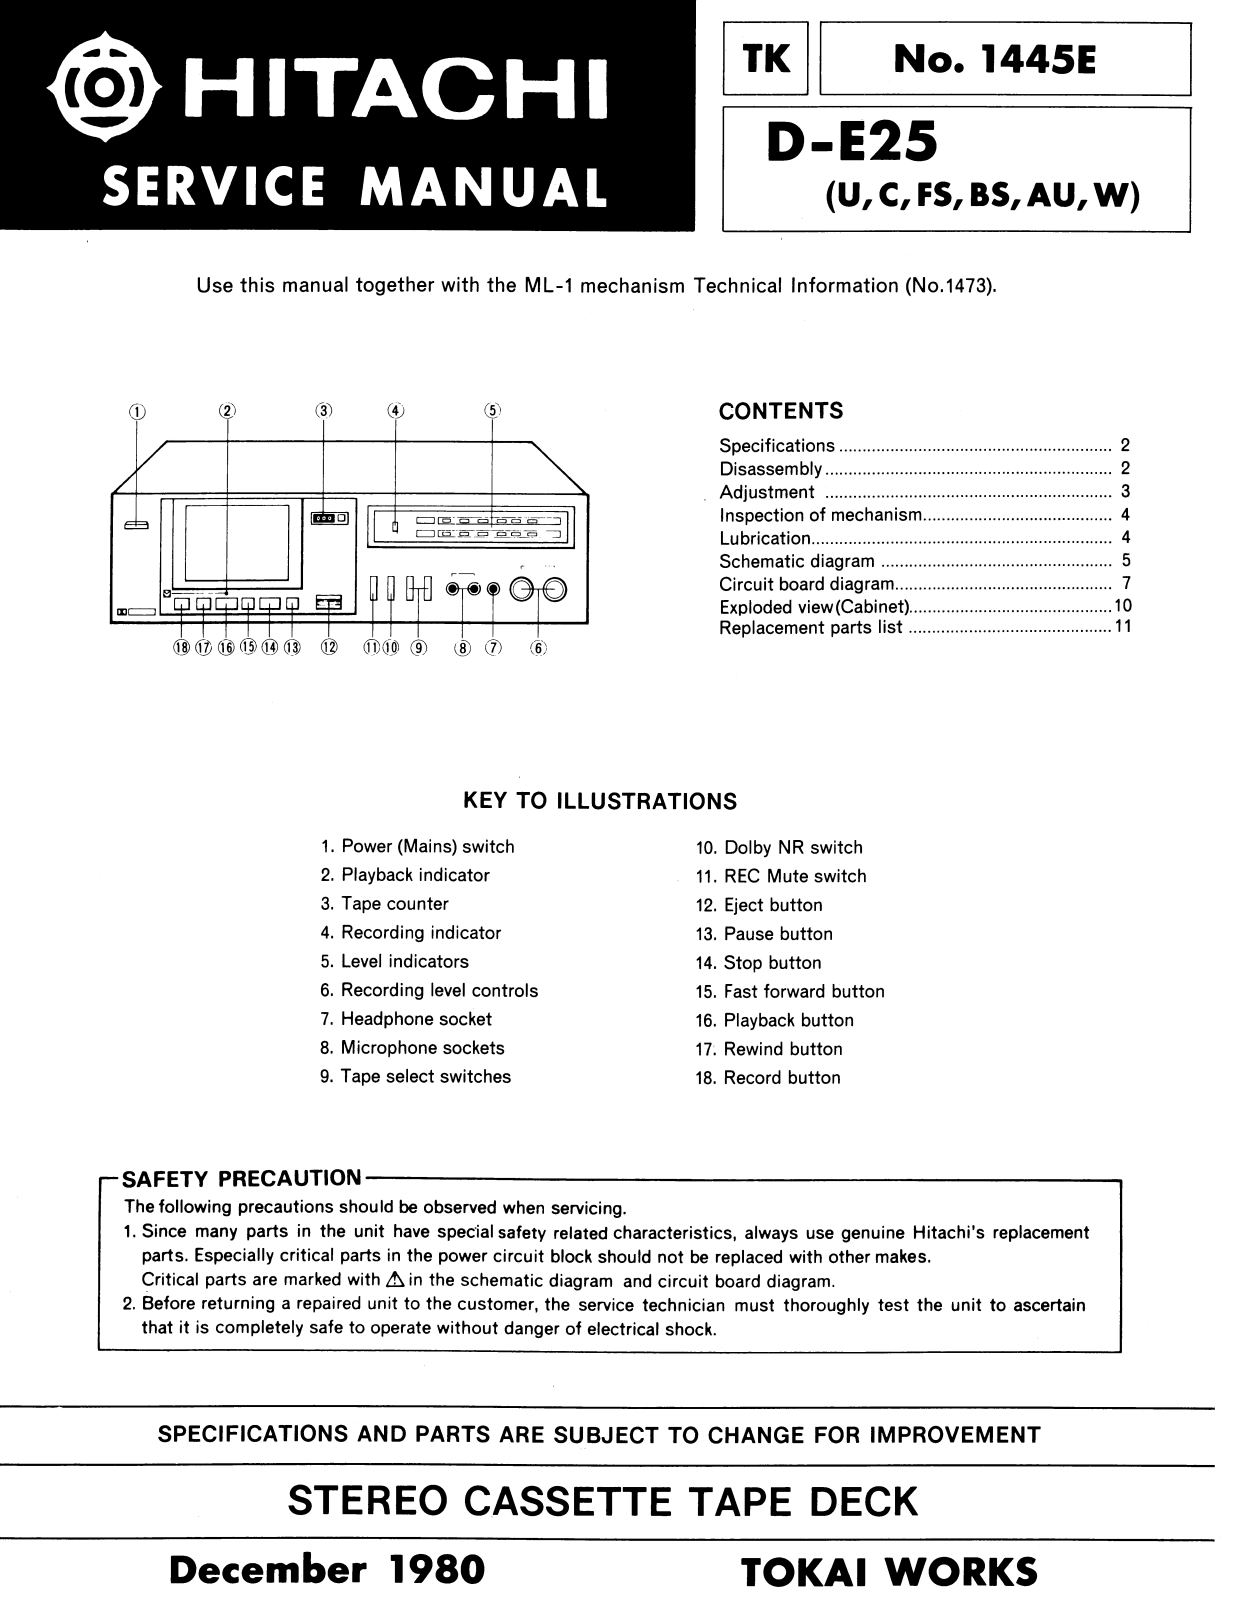 Hitachi DE-25 Service Manual